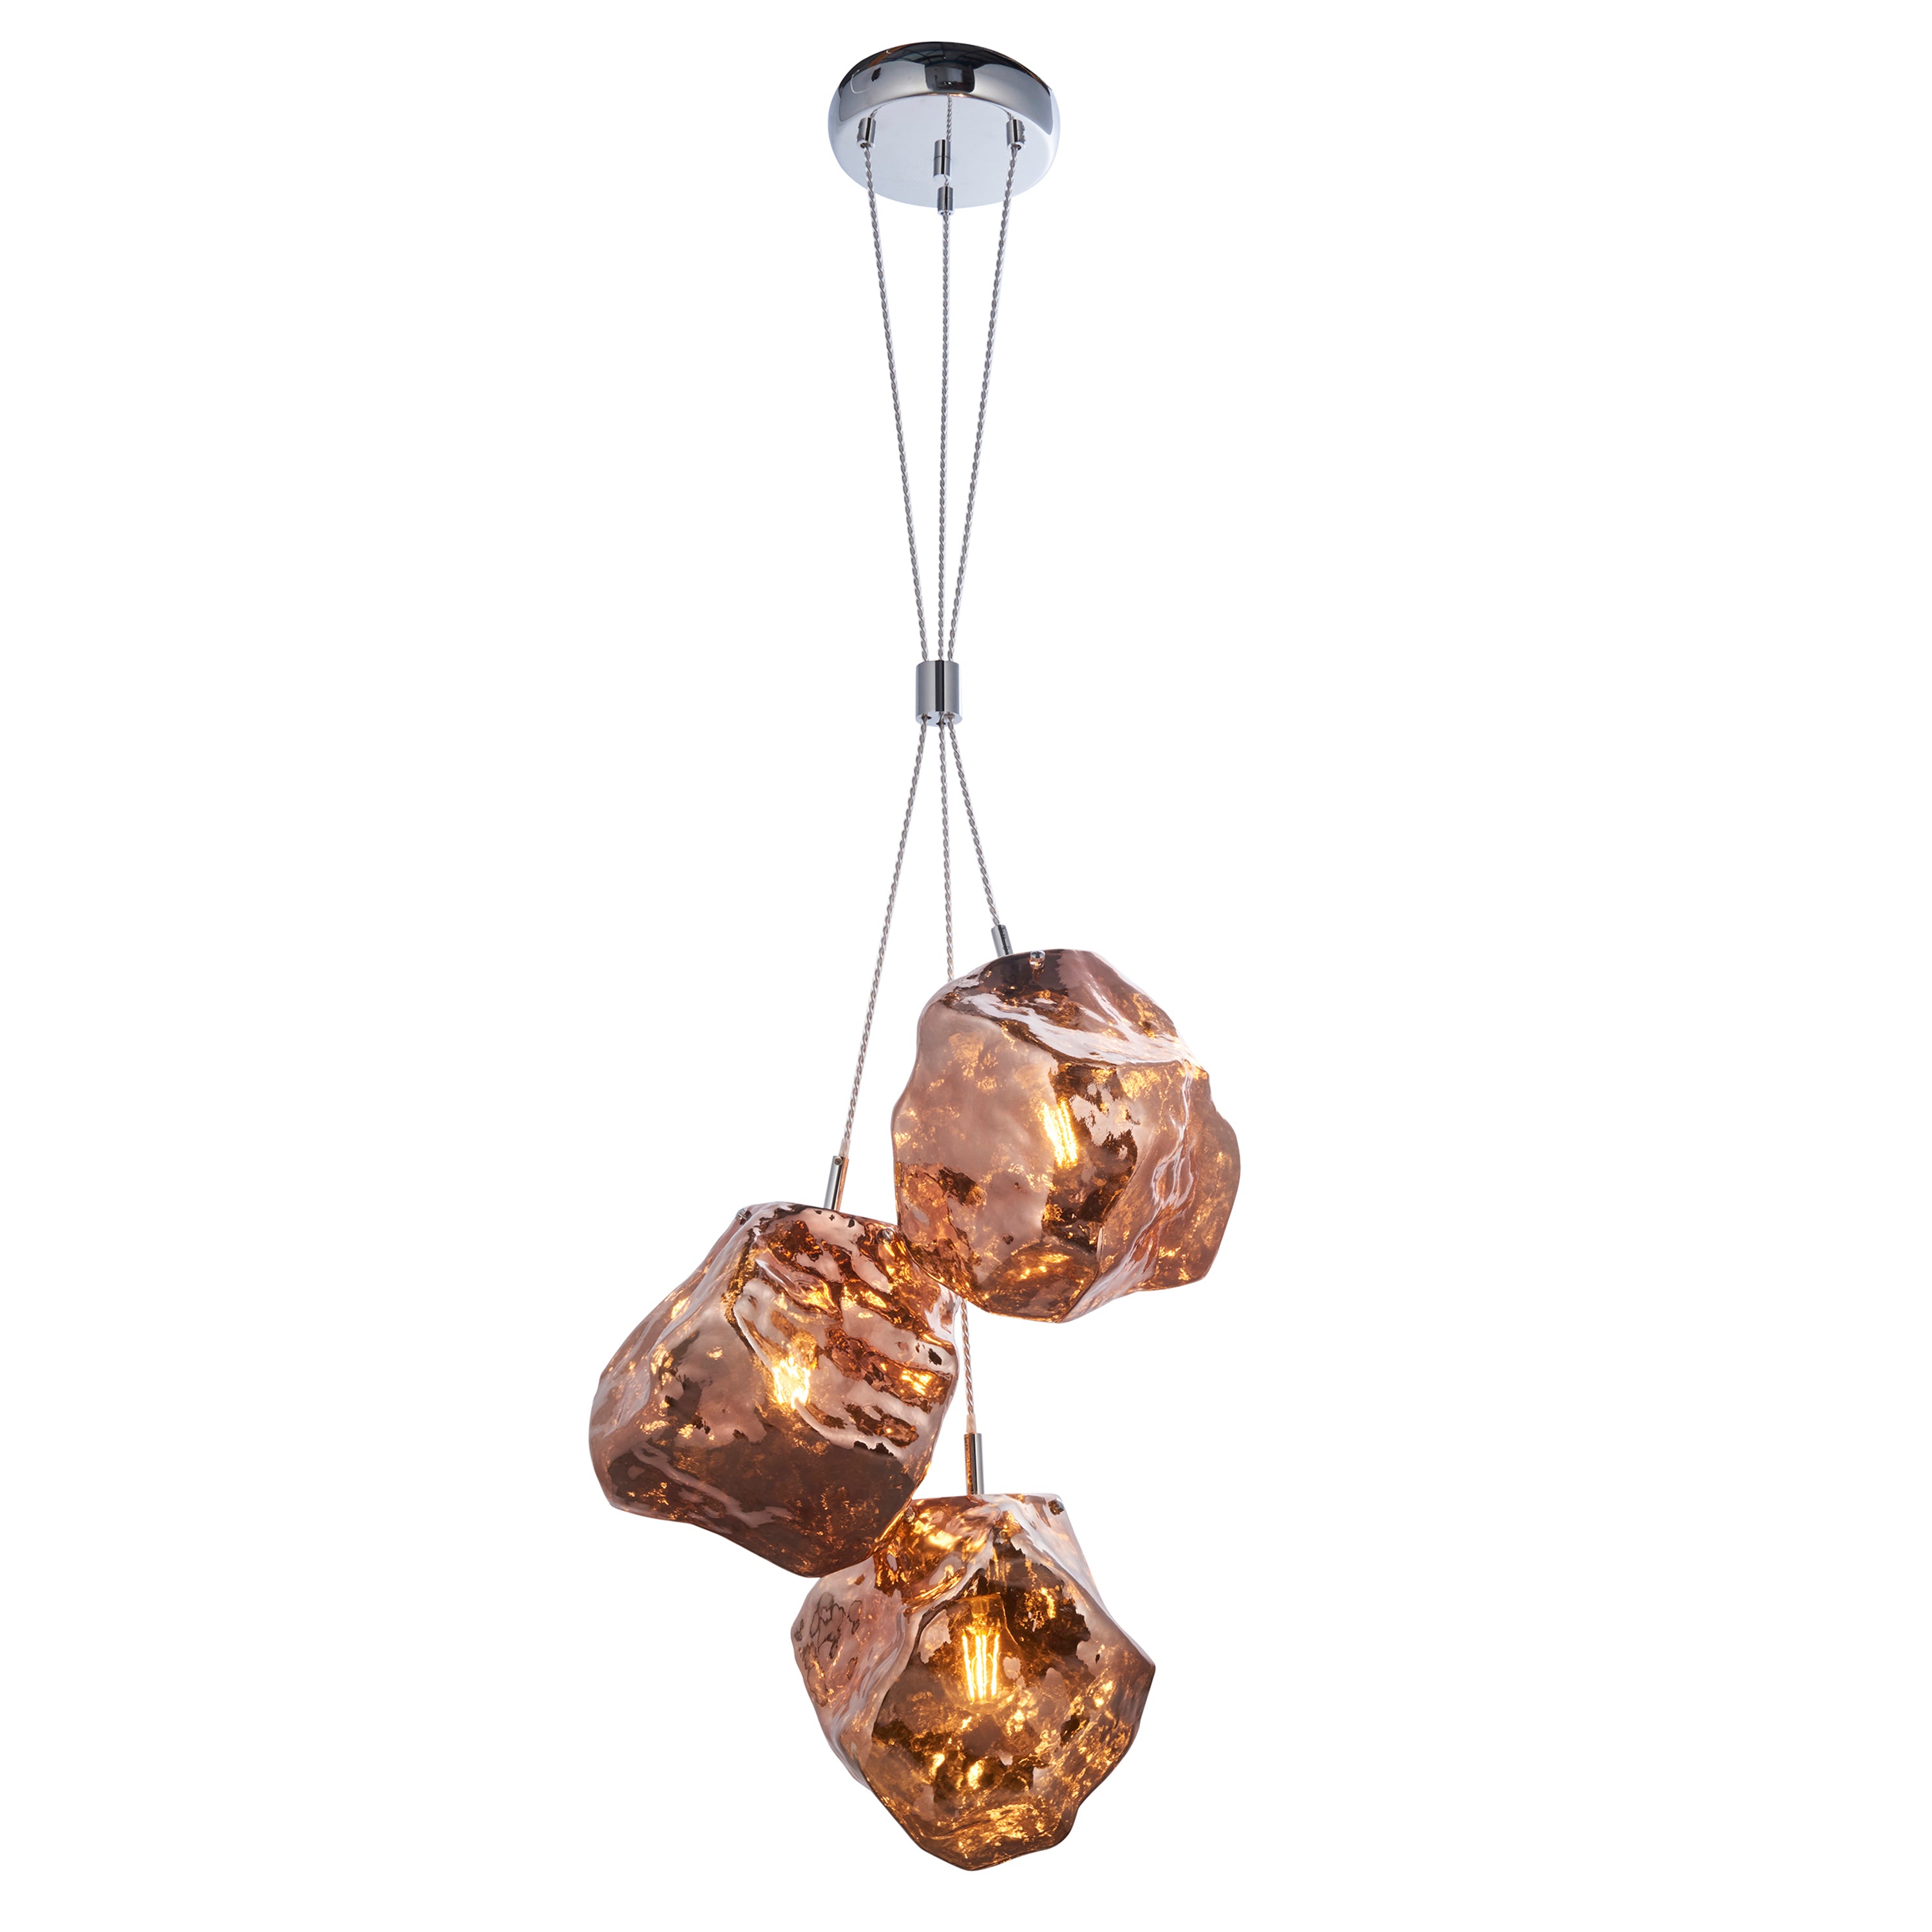 Rok Trio pendant light in steel and glass | MalletandPlane.com